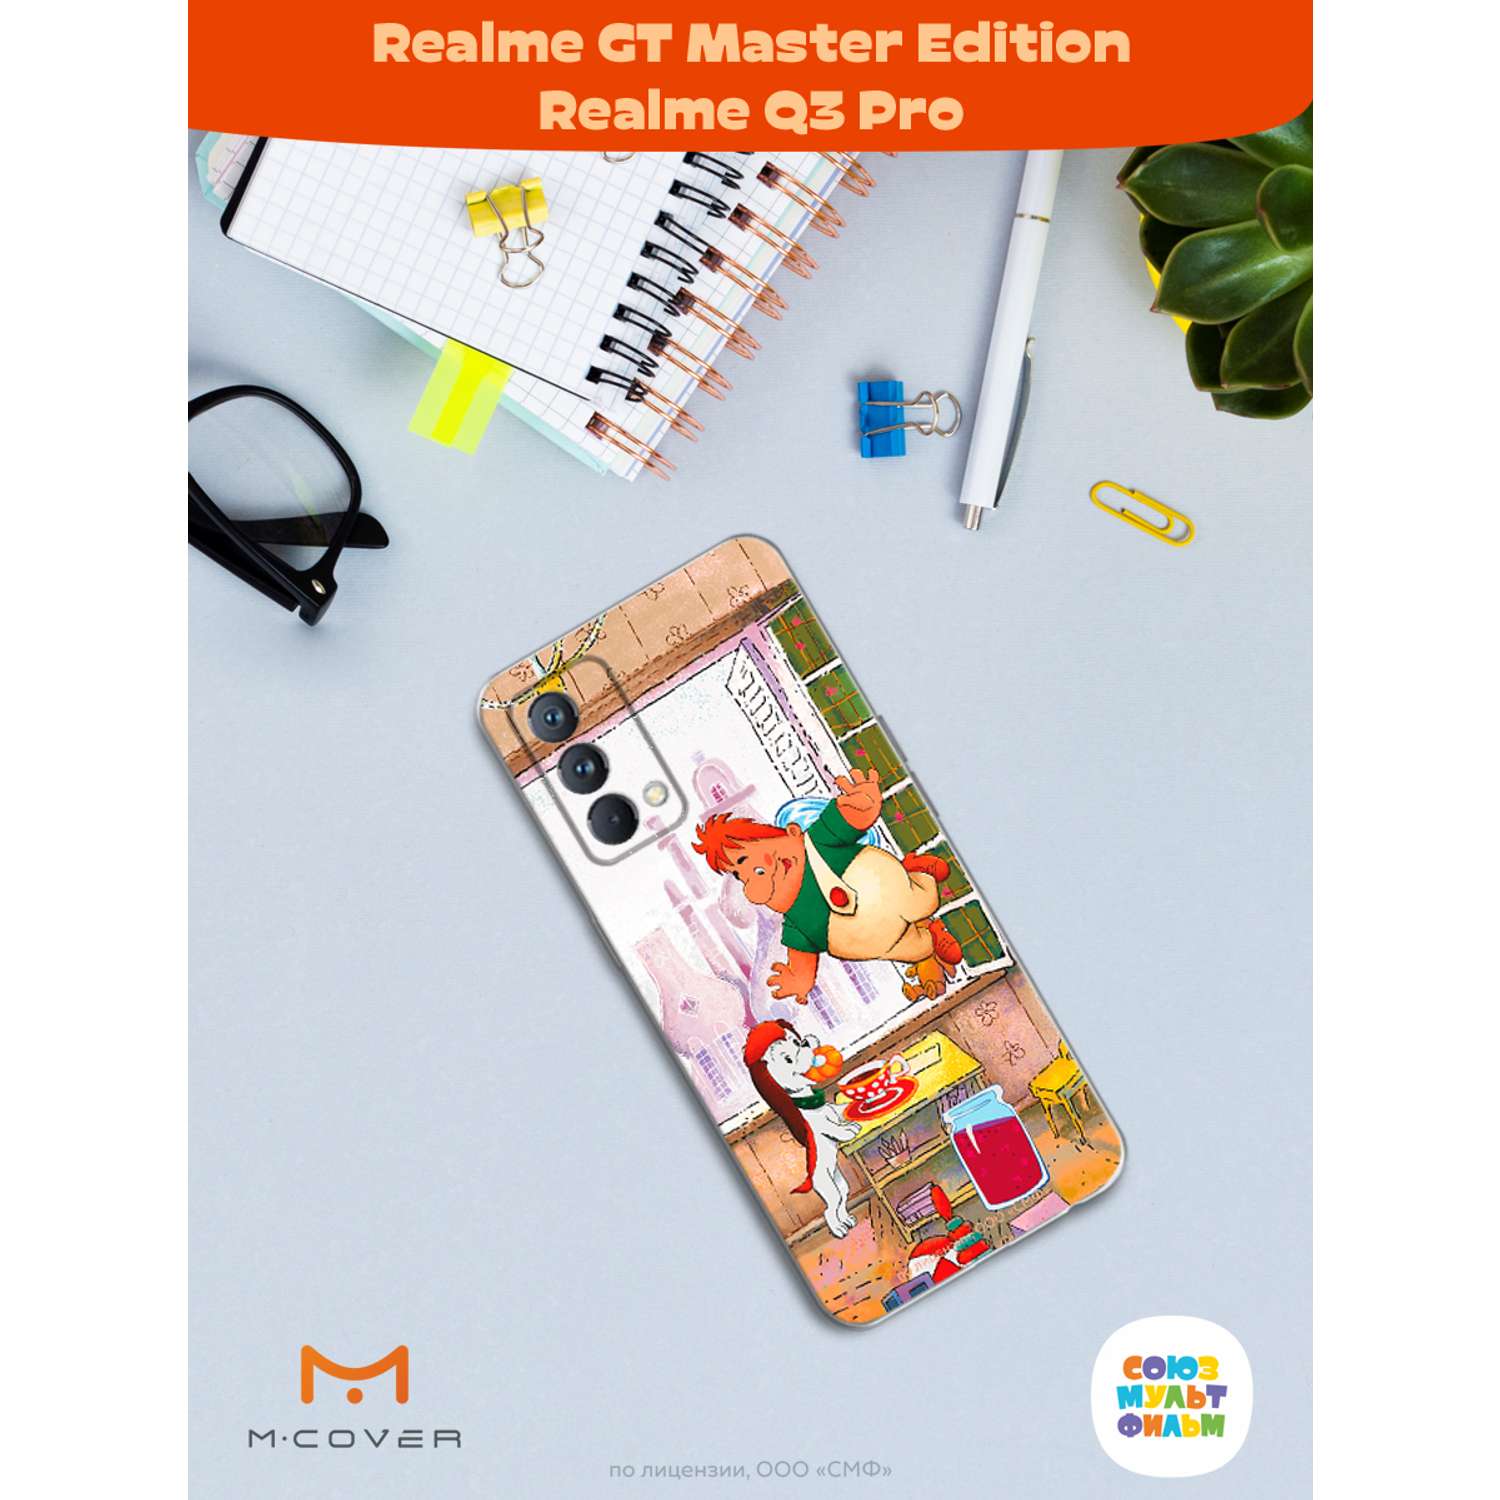 Силиконовый чехол Mcover для смартфона Realme GT Master Edition Q3 Pro Союзмультфильм плюшками балуемся - фото 3